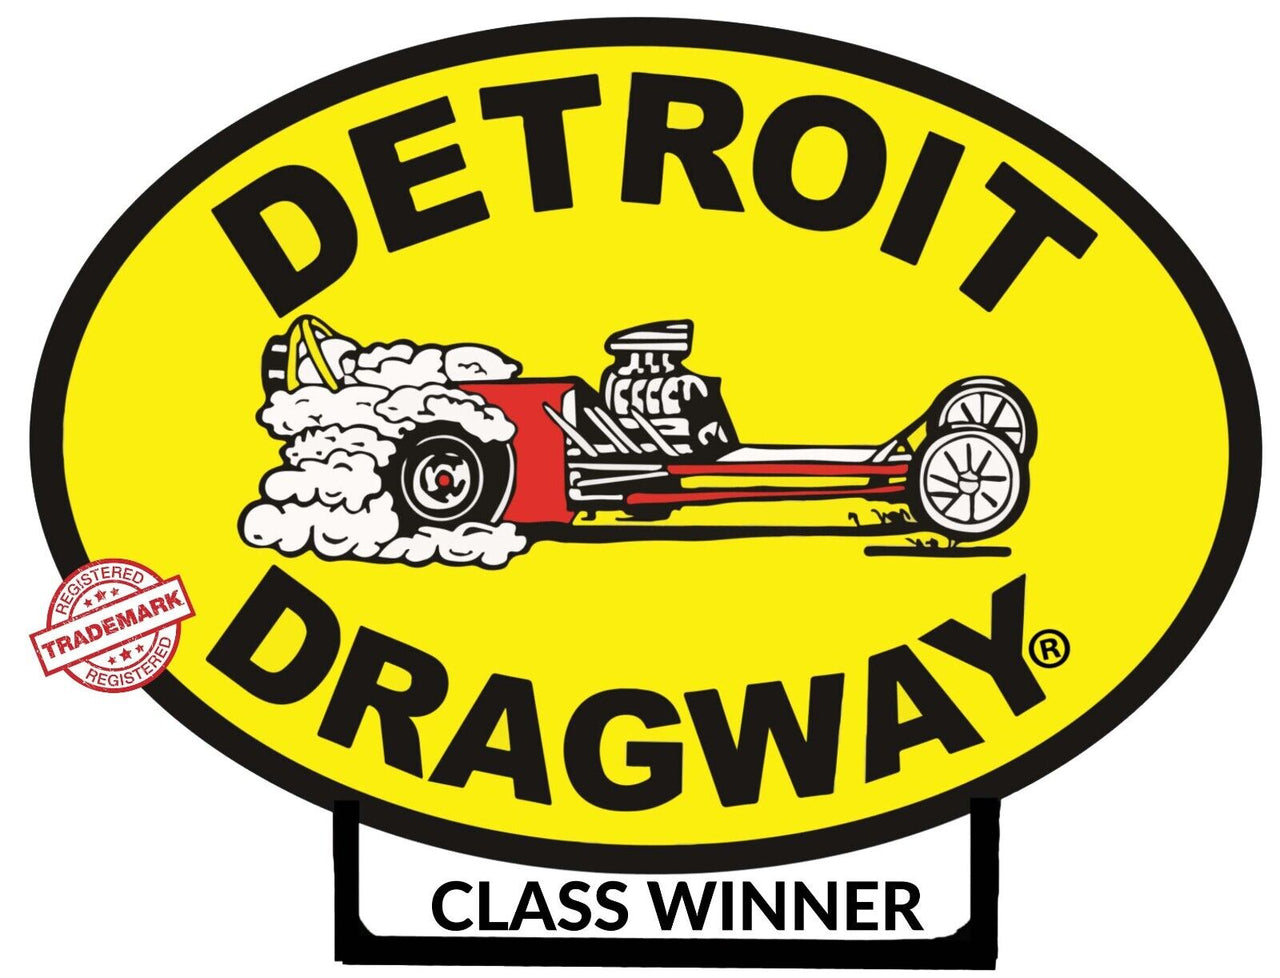 Detroit Dragway "Class Winner" Sticker/Decal